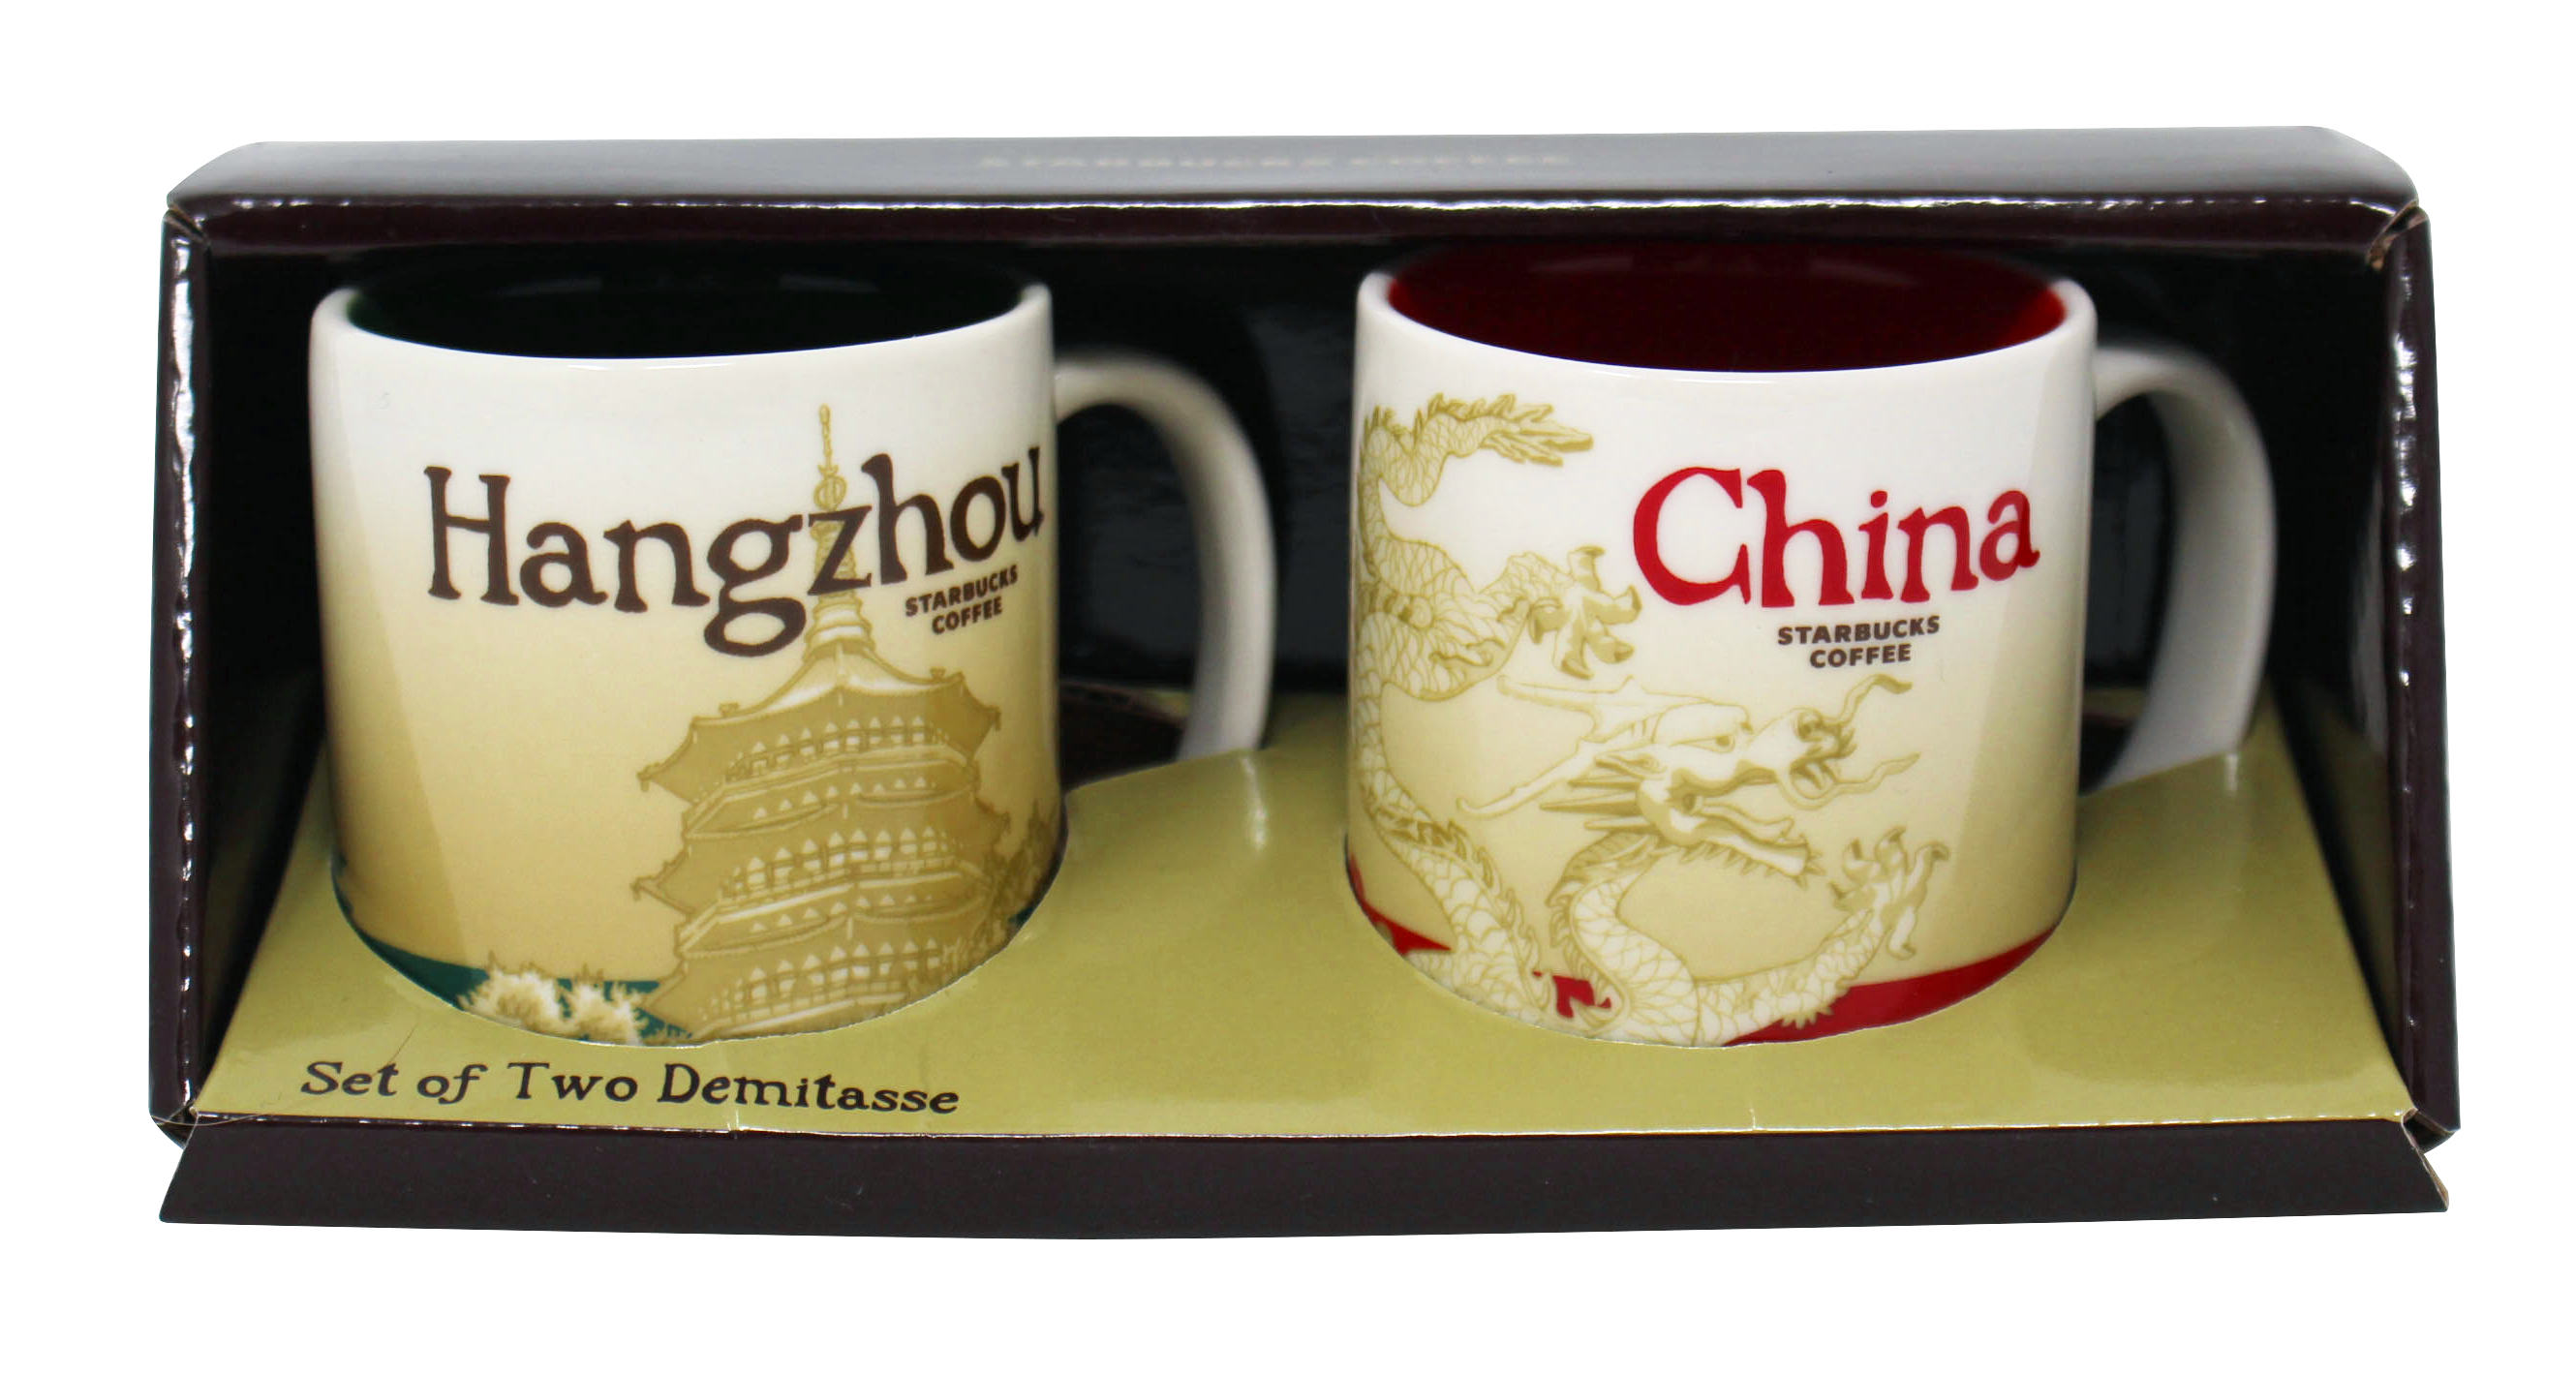 Starbucks Global Icon Series Hangzhou and China Demitasse Mugs, 3 Oz (2 Pack)